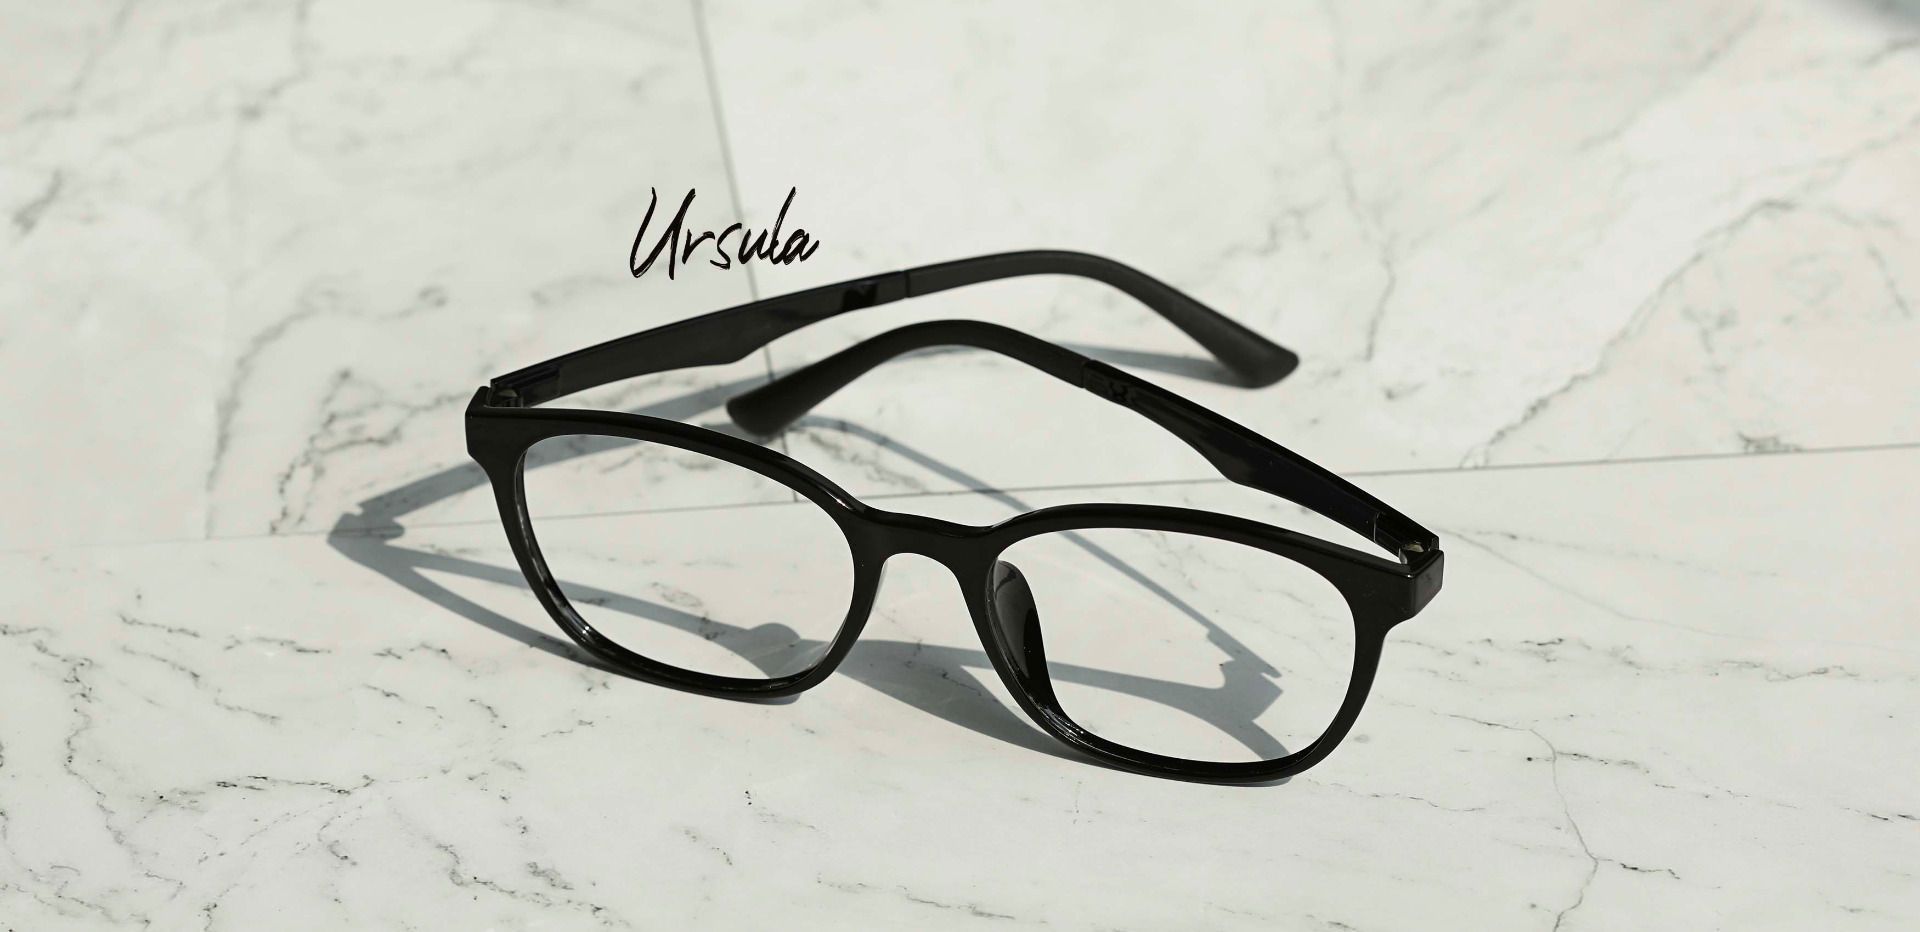 Ursula Oval Lined Bifocal Glasses - Black